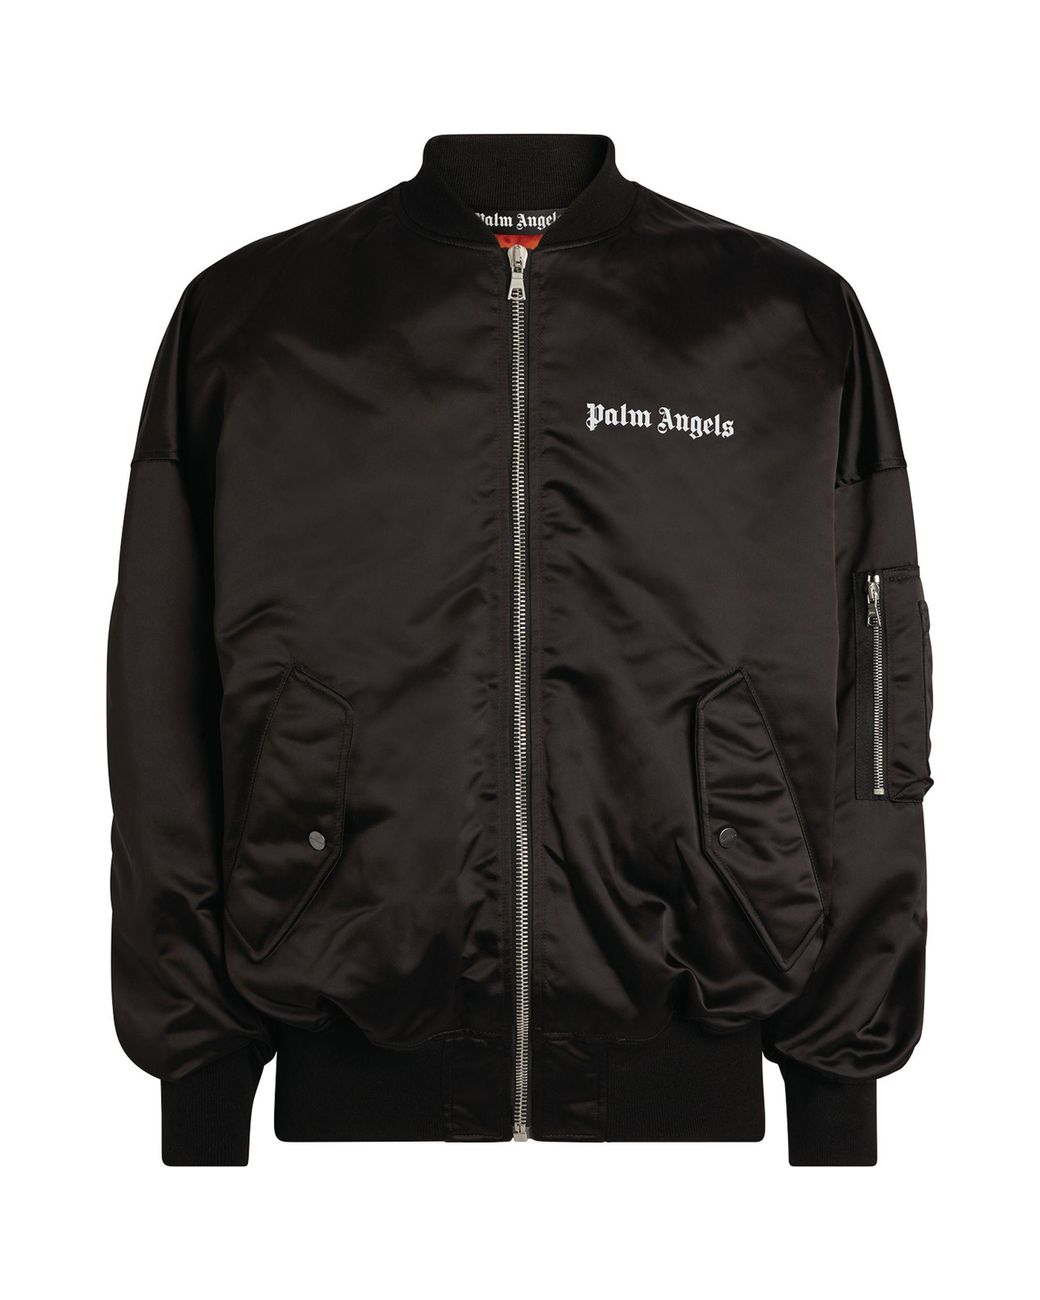 Palm Angels Satin Logo Bomber Jacket in Black for Men - Lyst